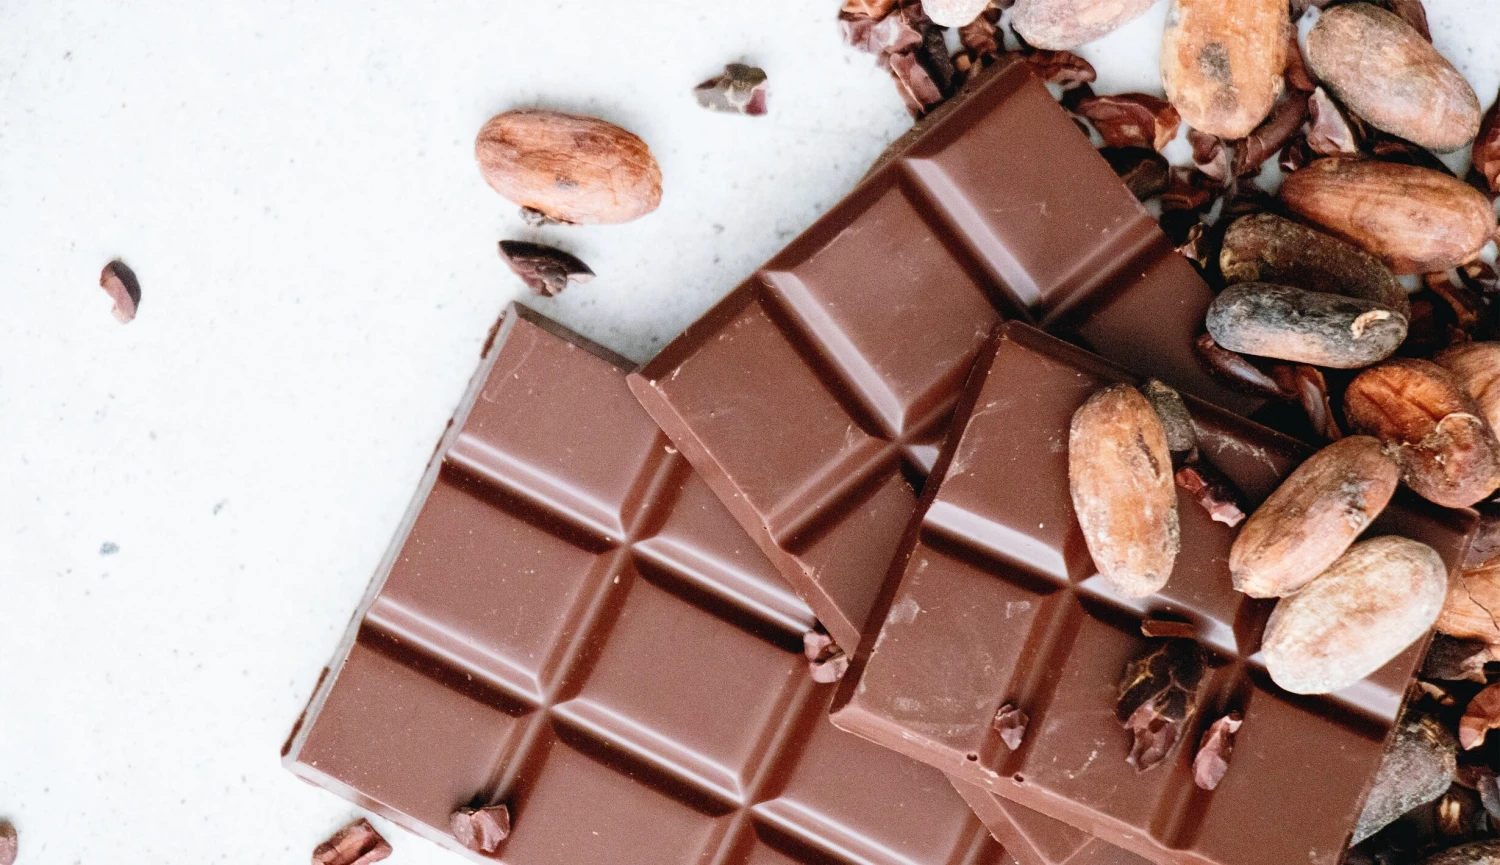 Kakao nikdy nebylo dražší. Čeští výrobci čokolády ale zůstávají klidní